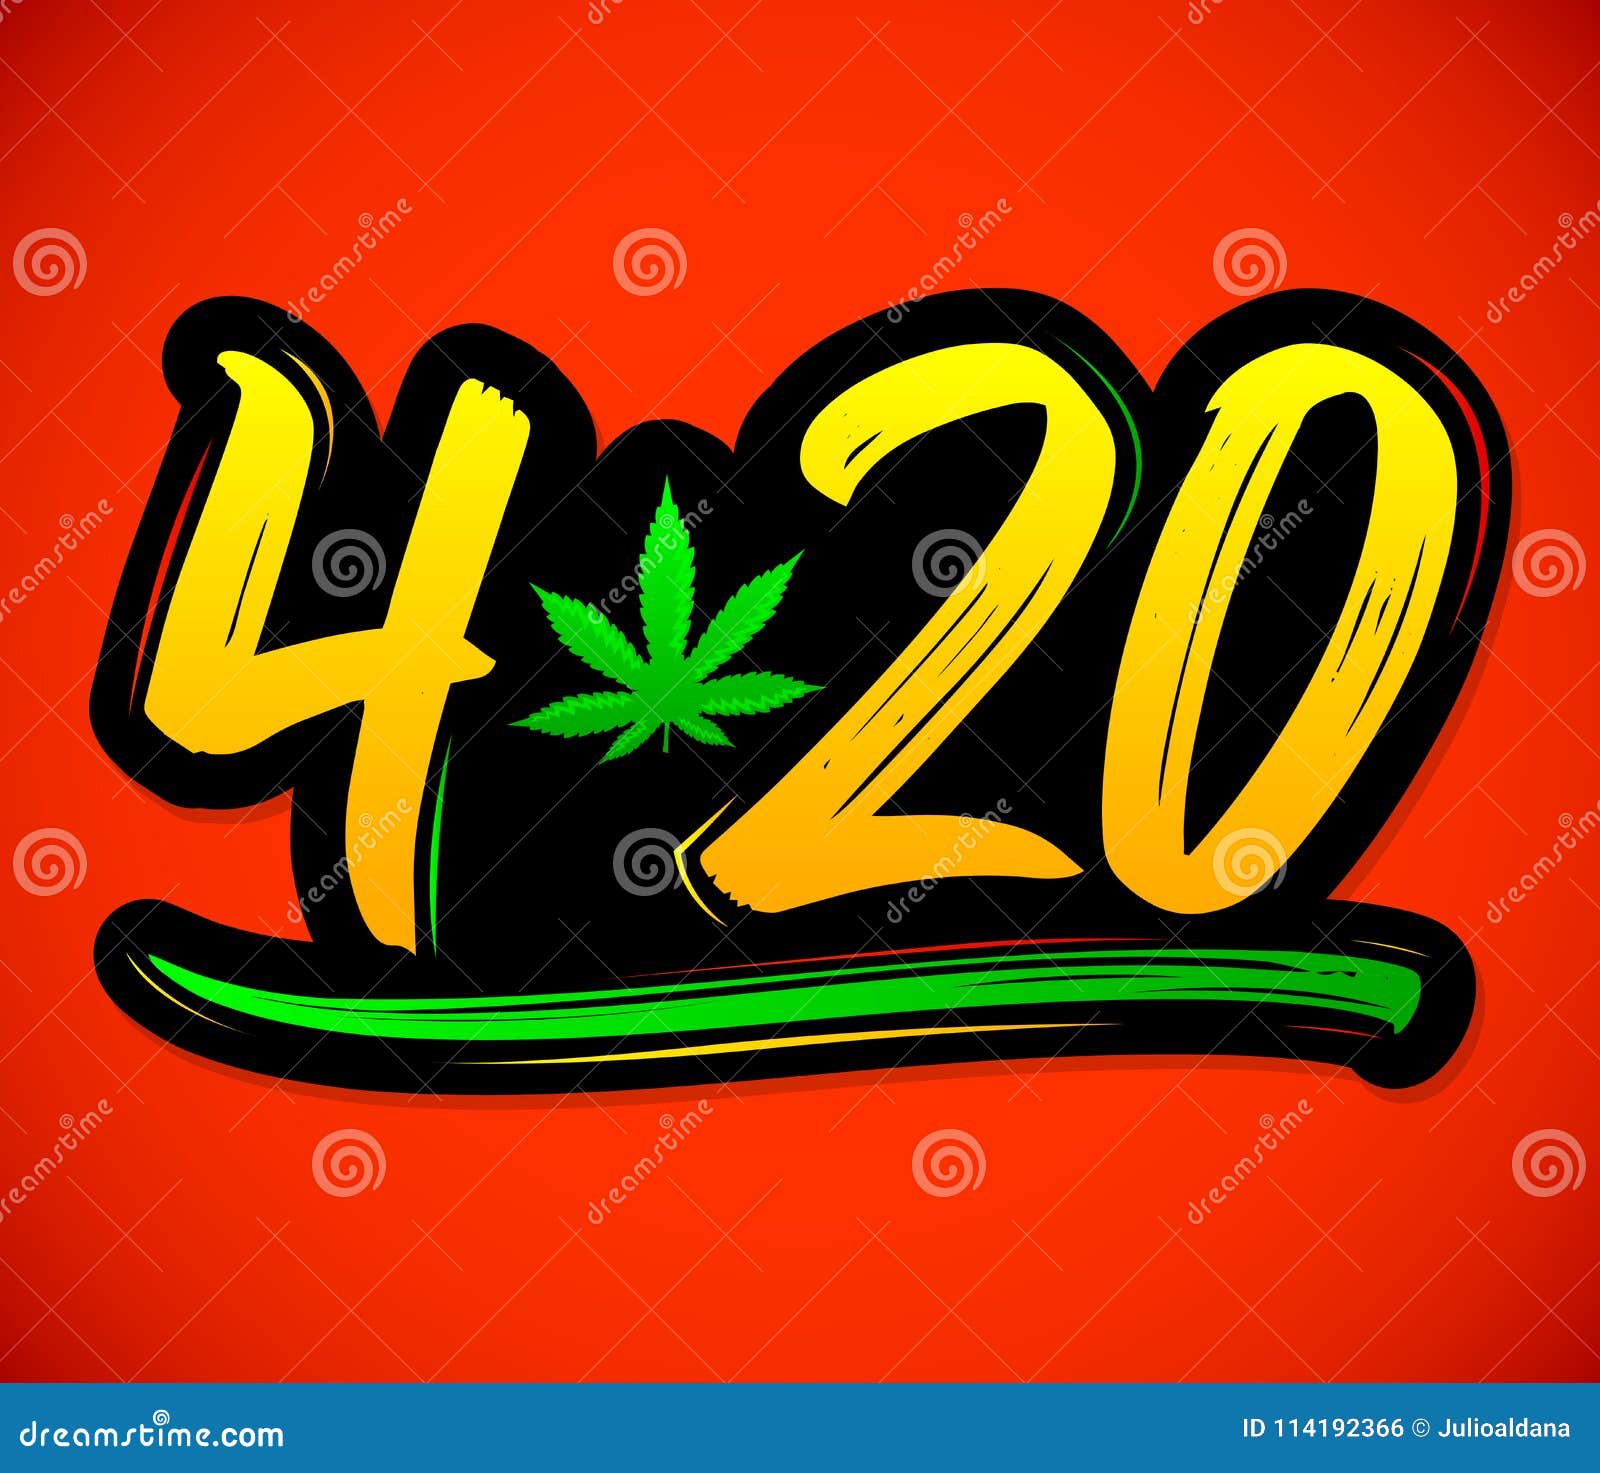 4 20 Marijuana Leaf Cannabis Celebration Vector Lettering Design April 20 Stock Vector Illustration Of Lettering Leaf 114192366